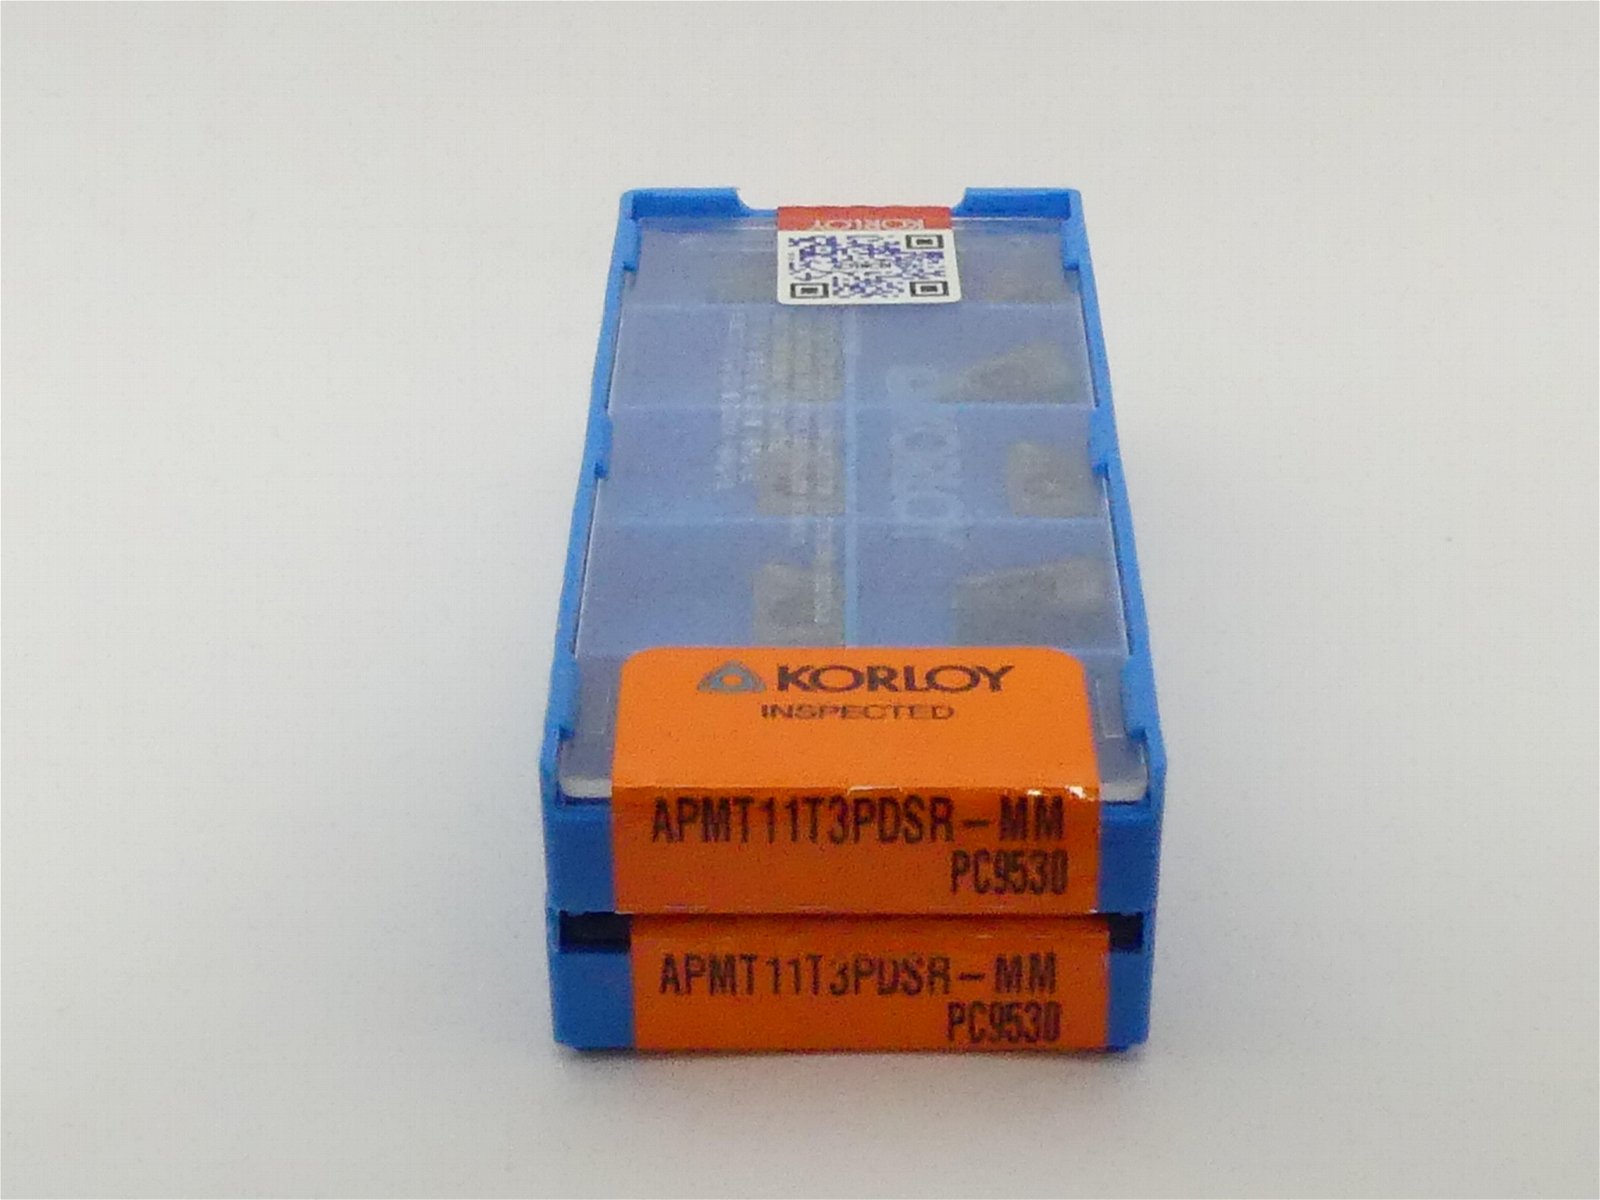 Korloy Apmt11t30pdsr-mm PC9530 for Milling Tools Carbide Tips